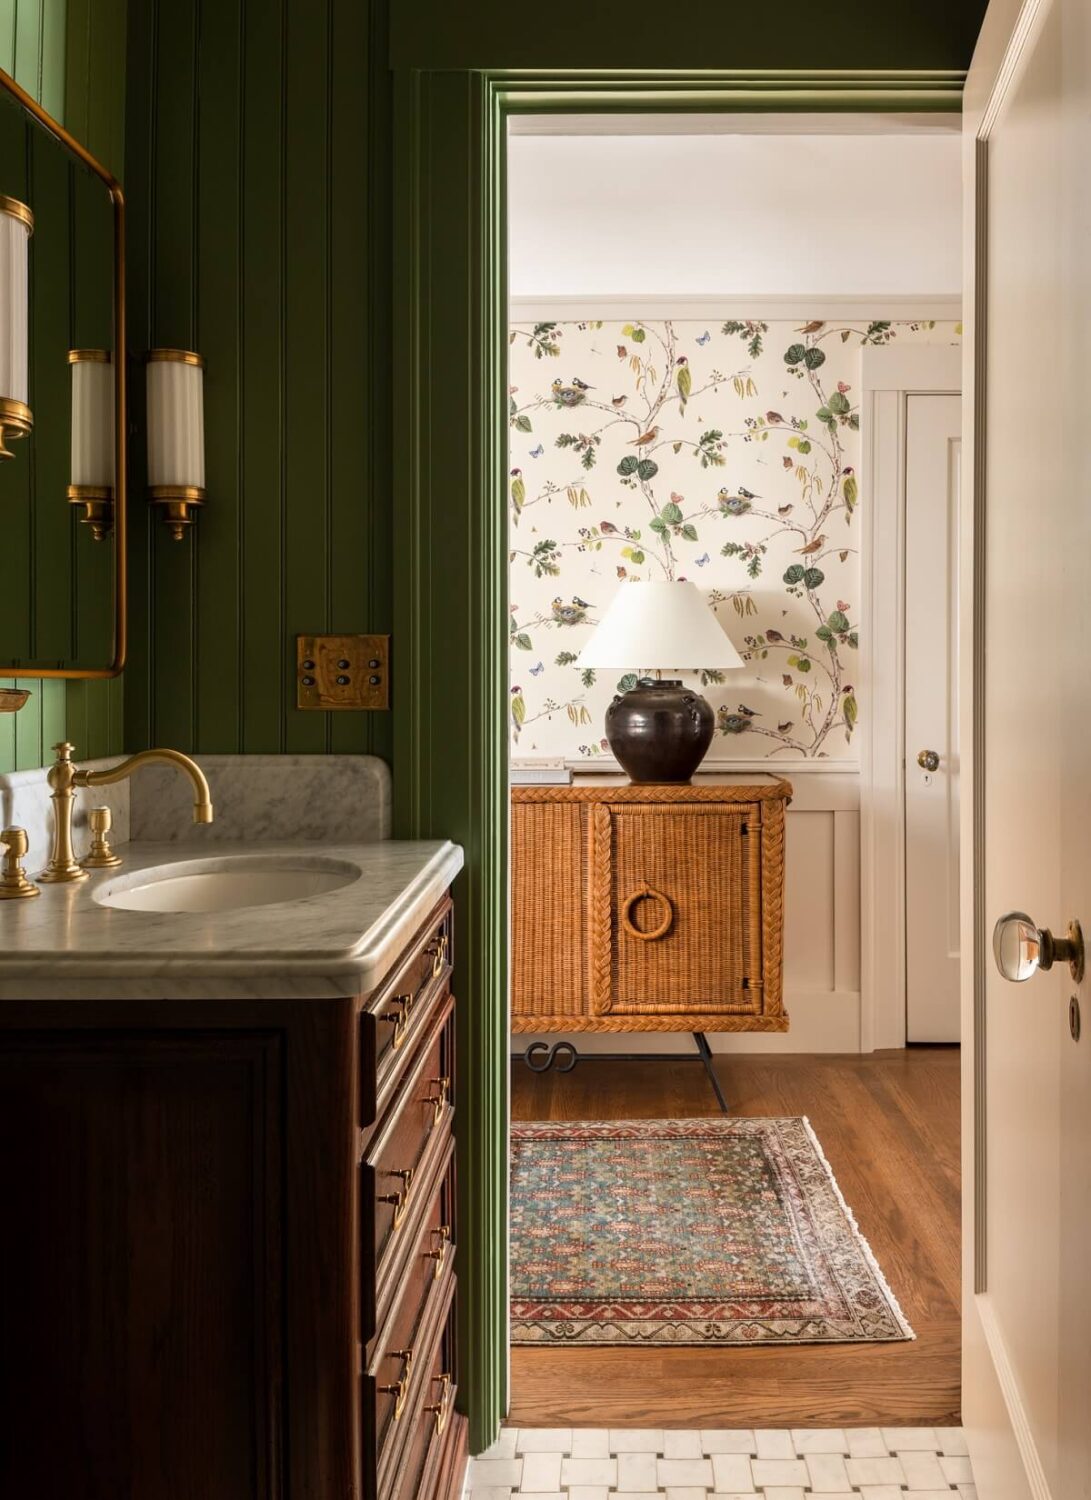 Heidi-Caillier-Design-Cow-Hollow-SF-interior-design-green-bathroom-birds-wallpaper